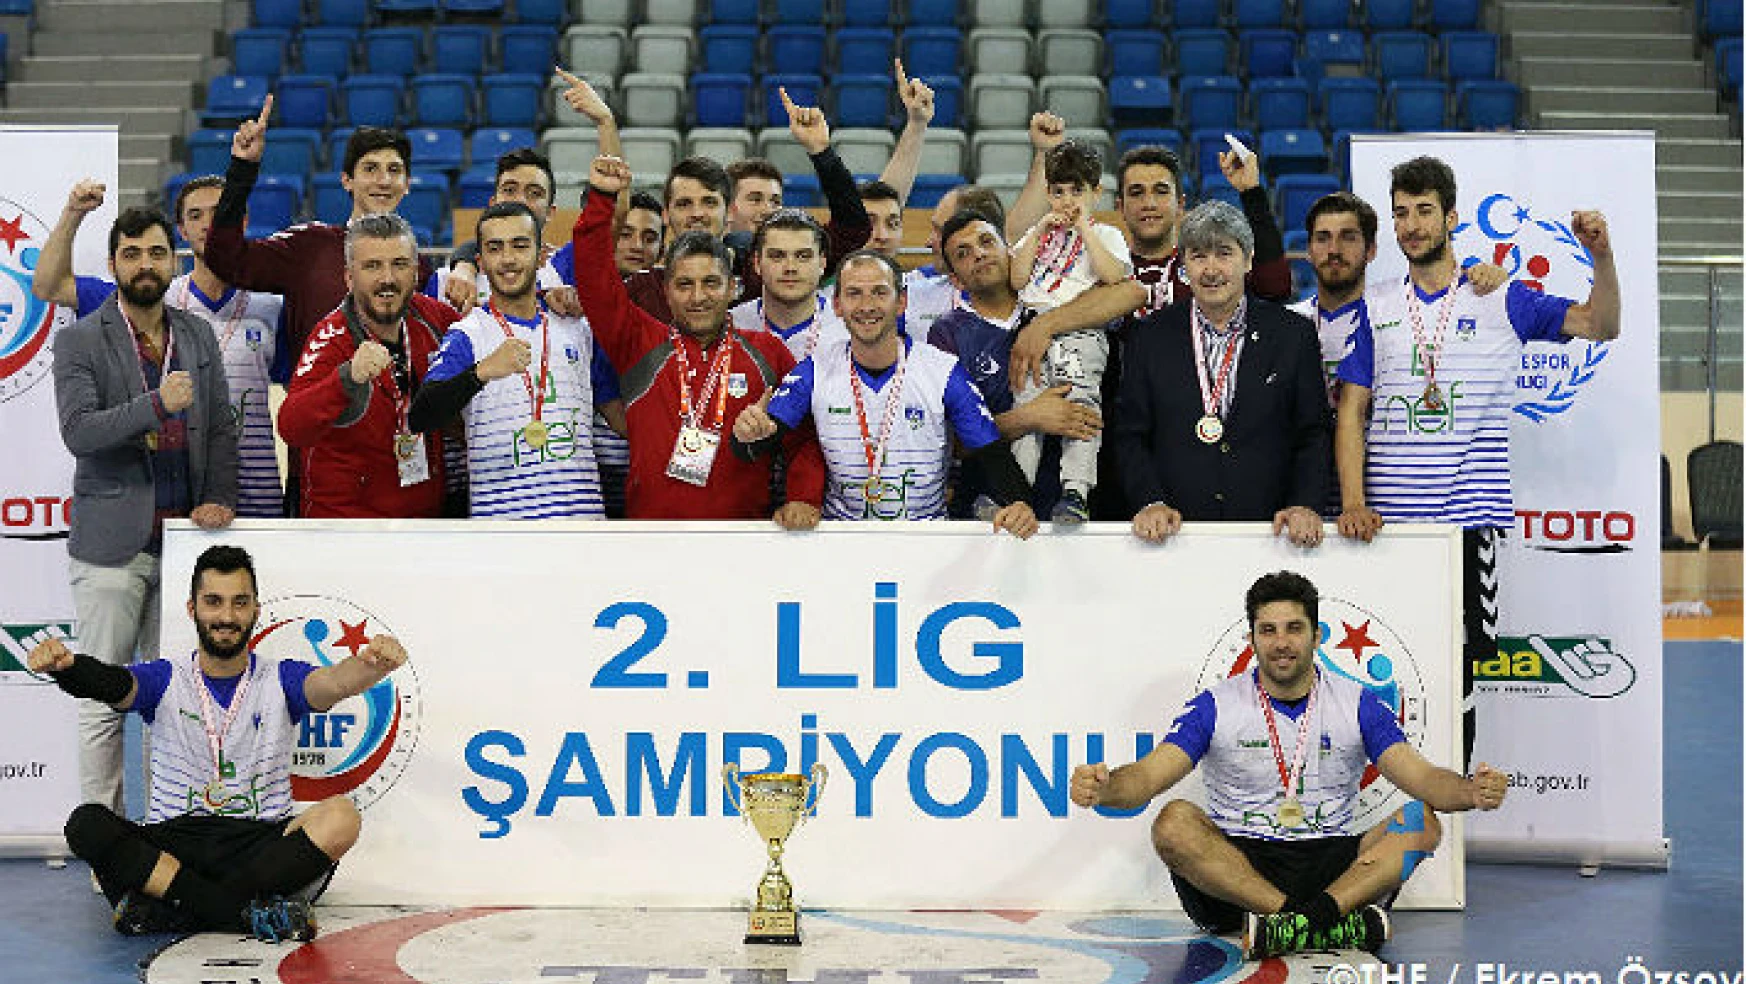 2.ligin şampiyonu Nef Bahçelievler Belediyesi